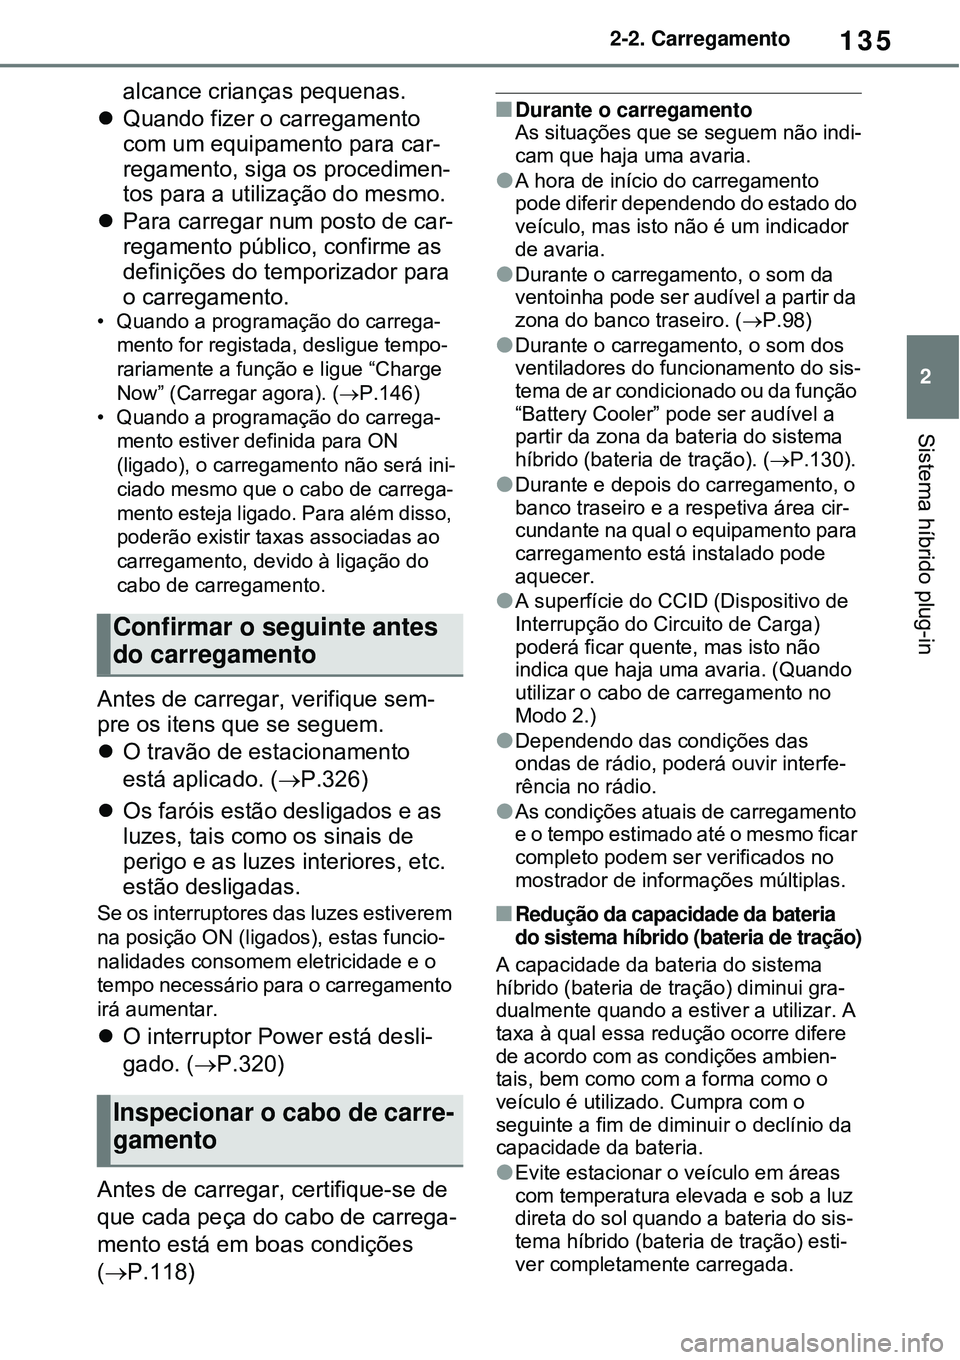 TOYOTA RAV4 PLUG-IN HYBRID 2021  Manual de utilização (in Portuguese) 135
2 2-2. Carregamento
Sistema híbrido plug-in
alcance crianças pequenas. 
Quando fizer o carregamento 
com um equipamento para car-
regamento, siga os procedimen-
tos para a utilização do mes